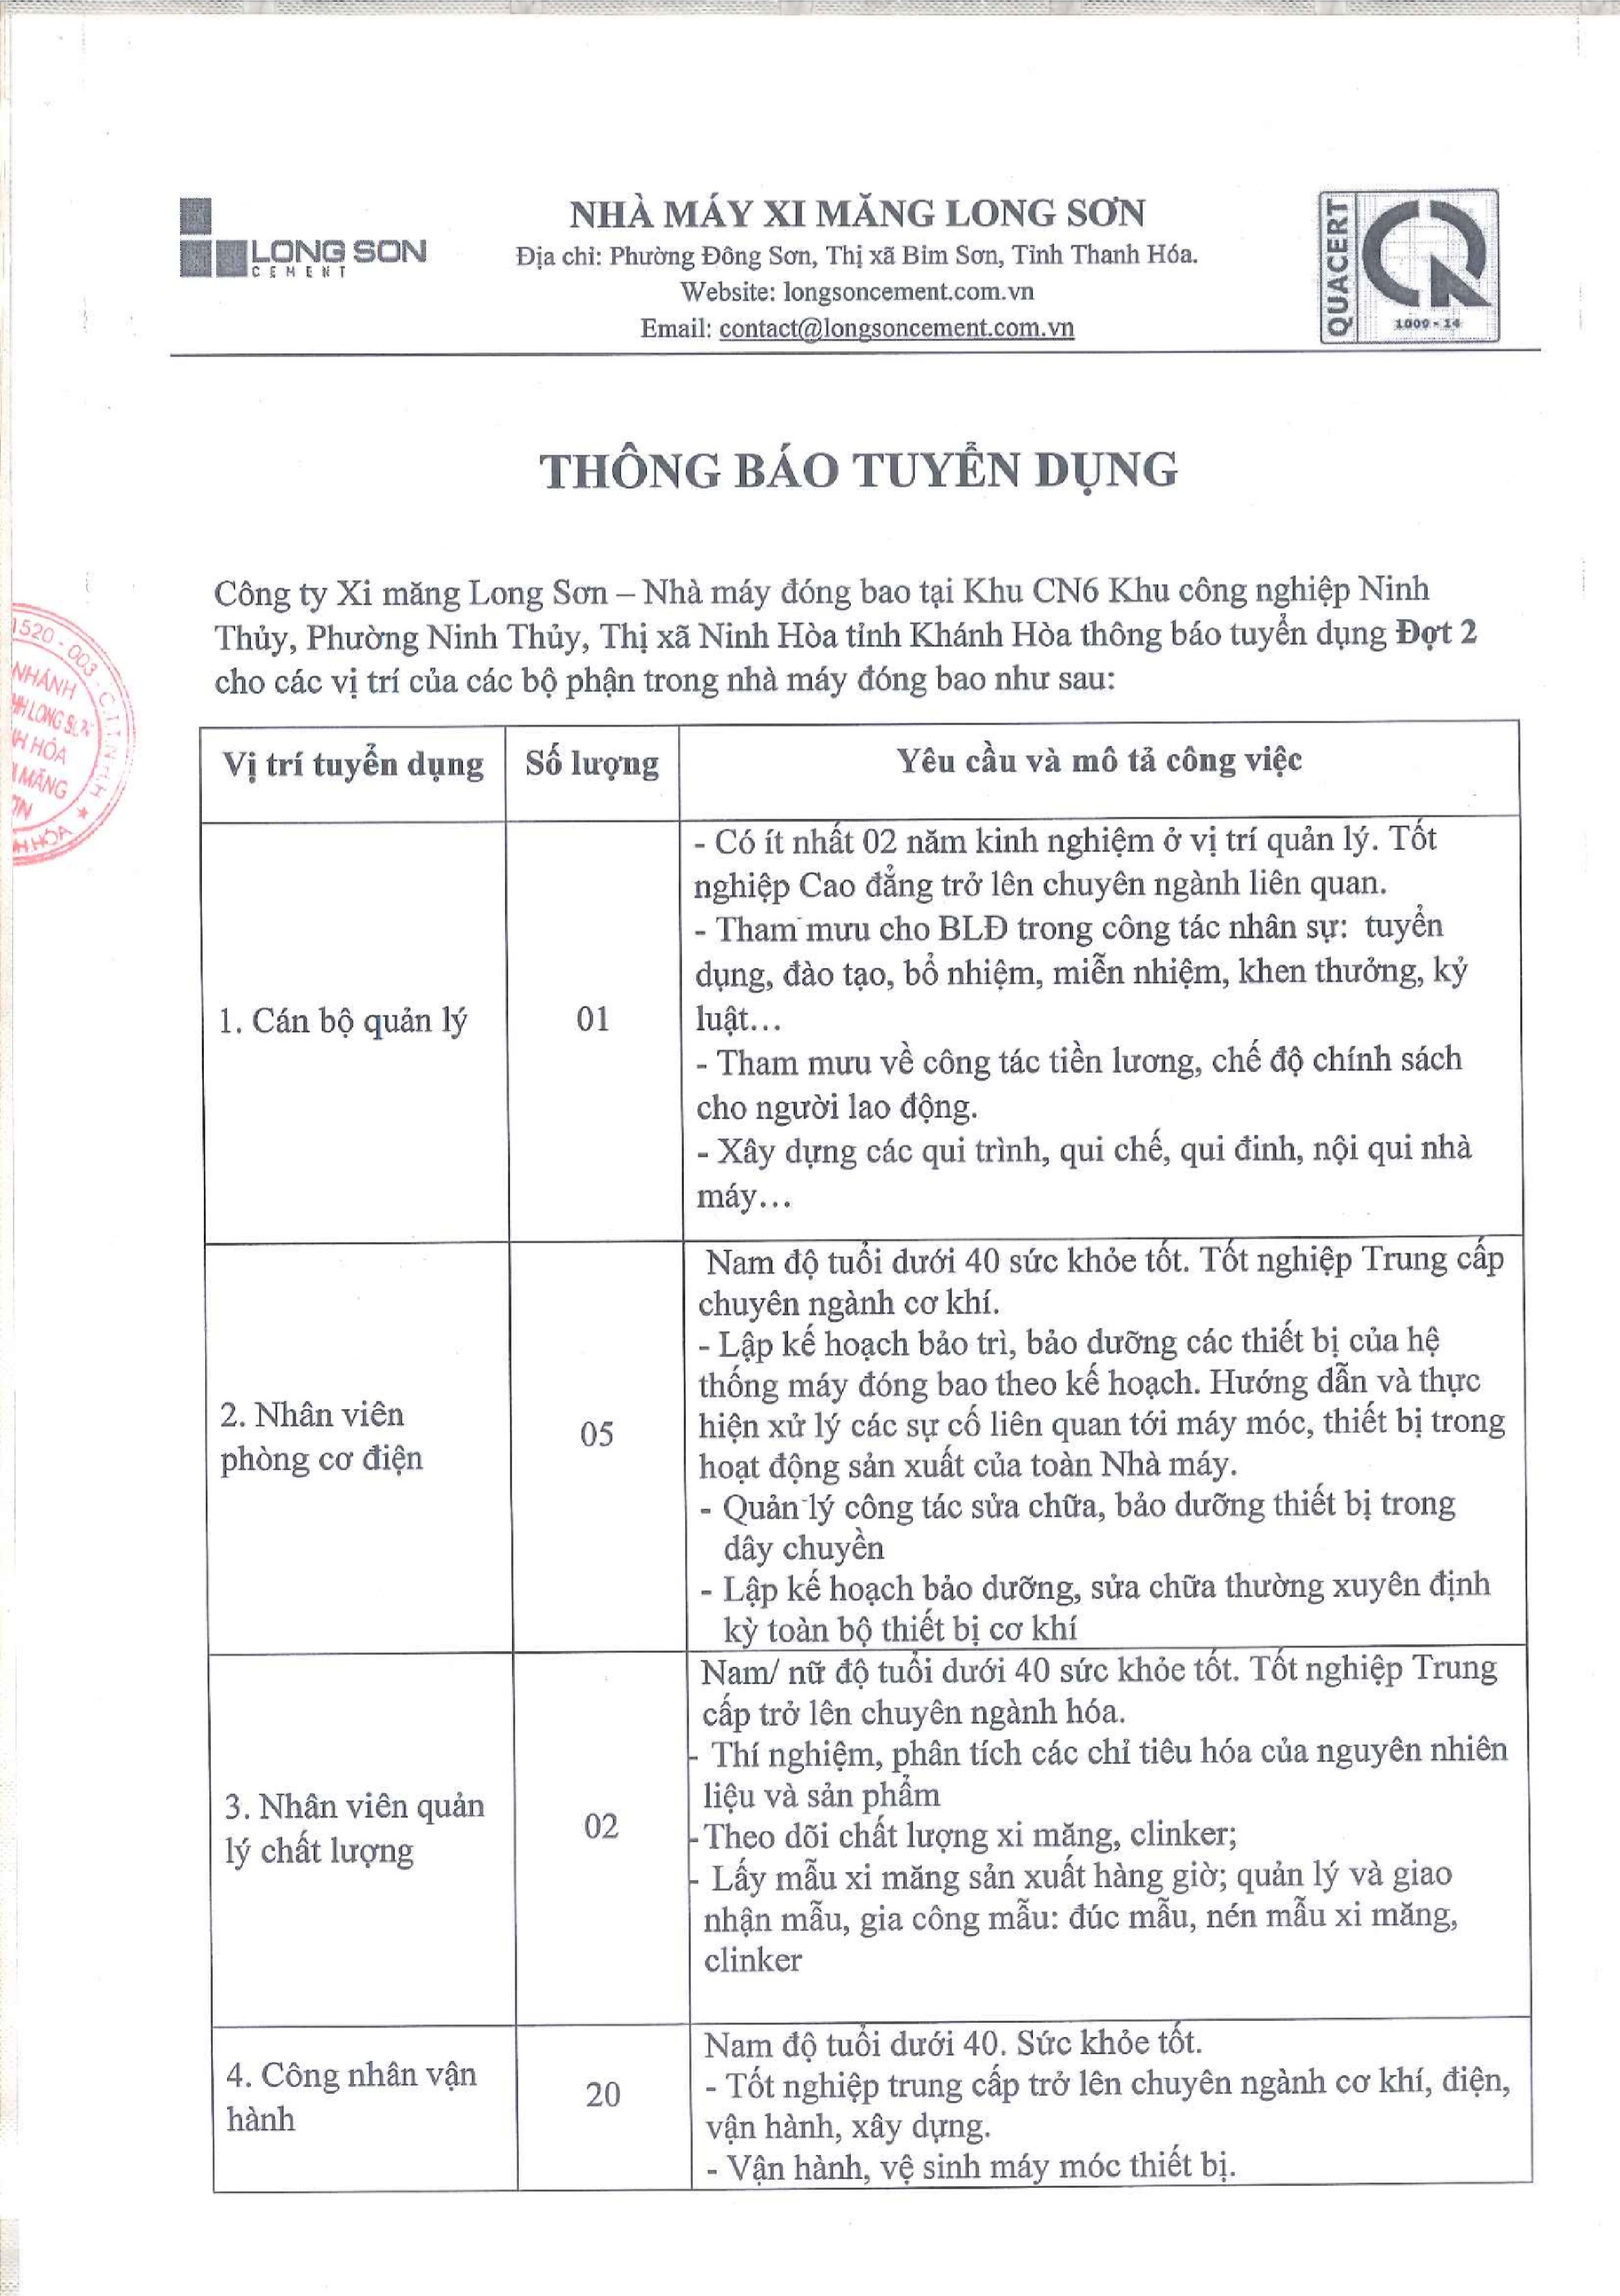 Xi măng Long Sơn – Thông báo tuyển dụng đợt 2 Nhà máy đóng bao tại Khu CN6 Khu công nghiệp Ninh Thủy, Phường Ninh Thủy, Thị xã Ninh Hòa tỉnh Khánh Hòa